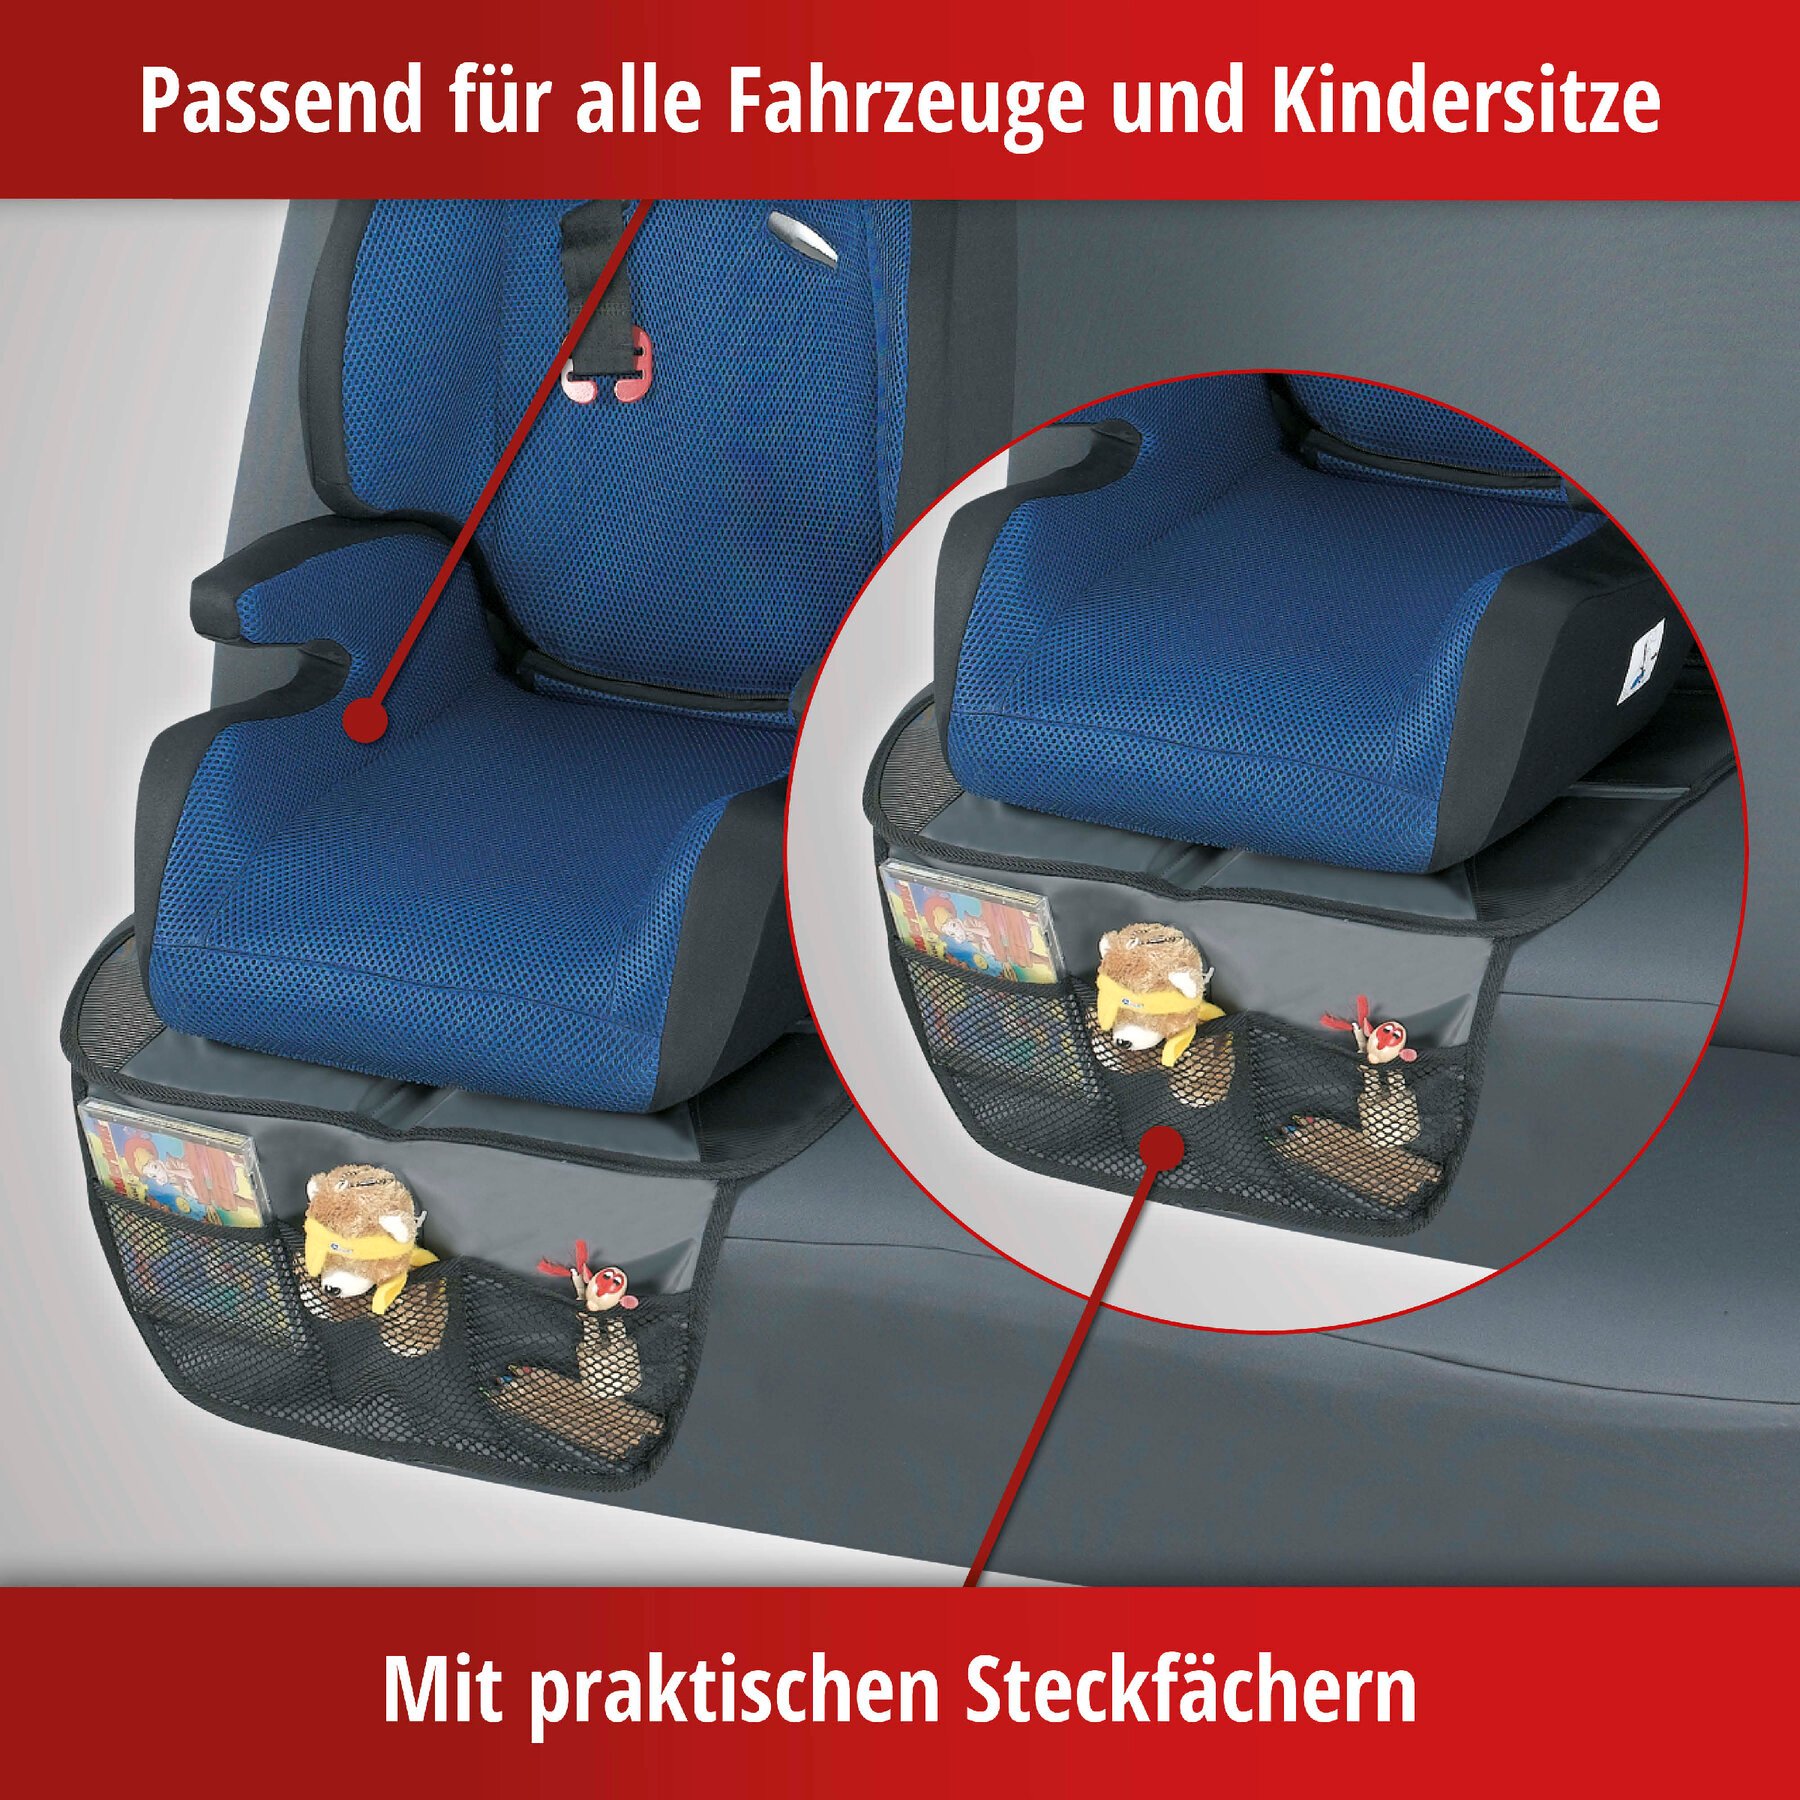 Kindersitzunterlage Tidy Fred, Auto-Schutzunterlage, Sitzschoner Kindersitz grau/schwarz